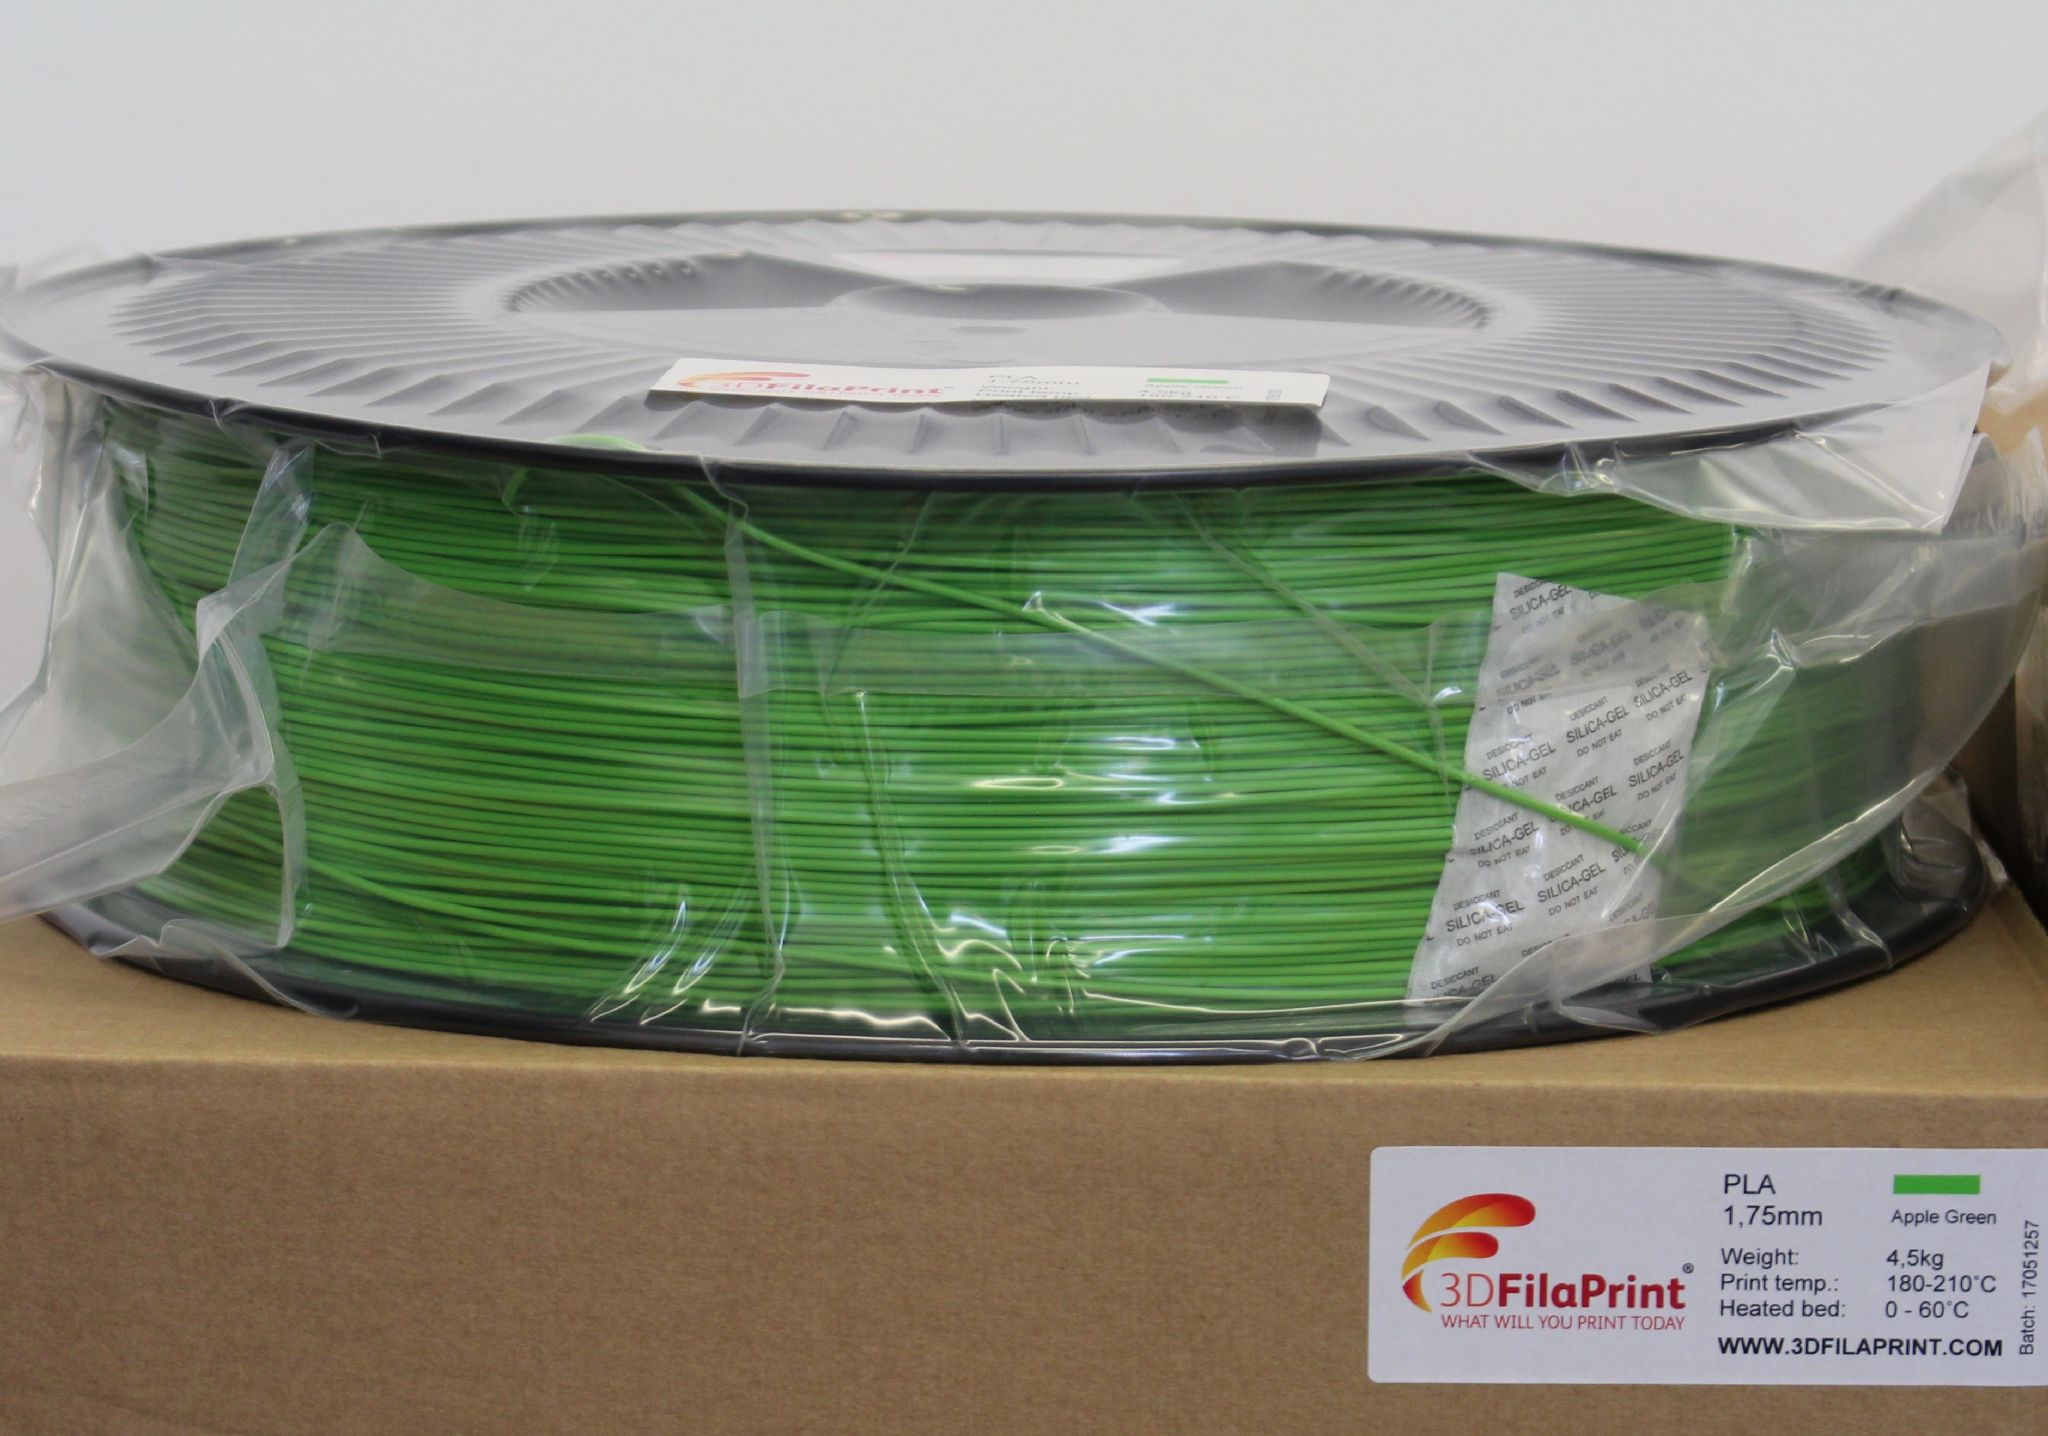 4.5KG 3D FilaPrint Apple Green Premium PLA 1.75mm 3D Printer Filament